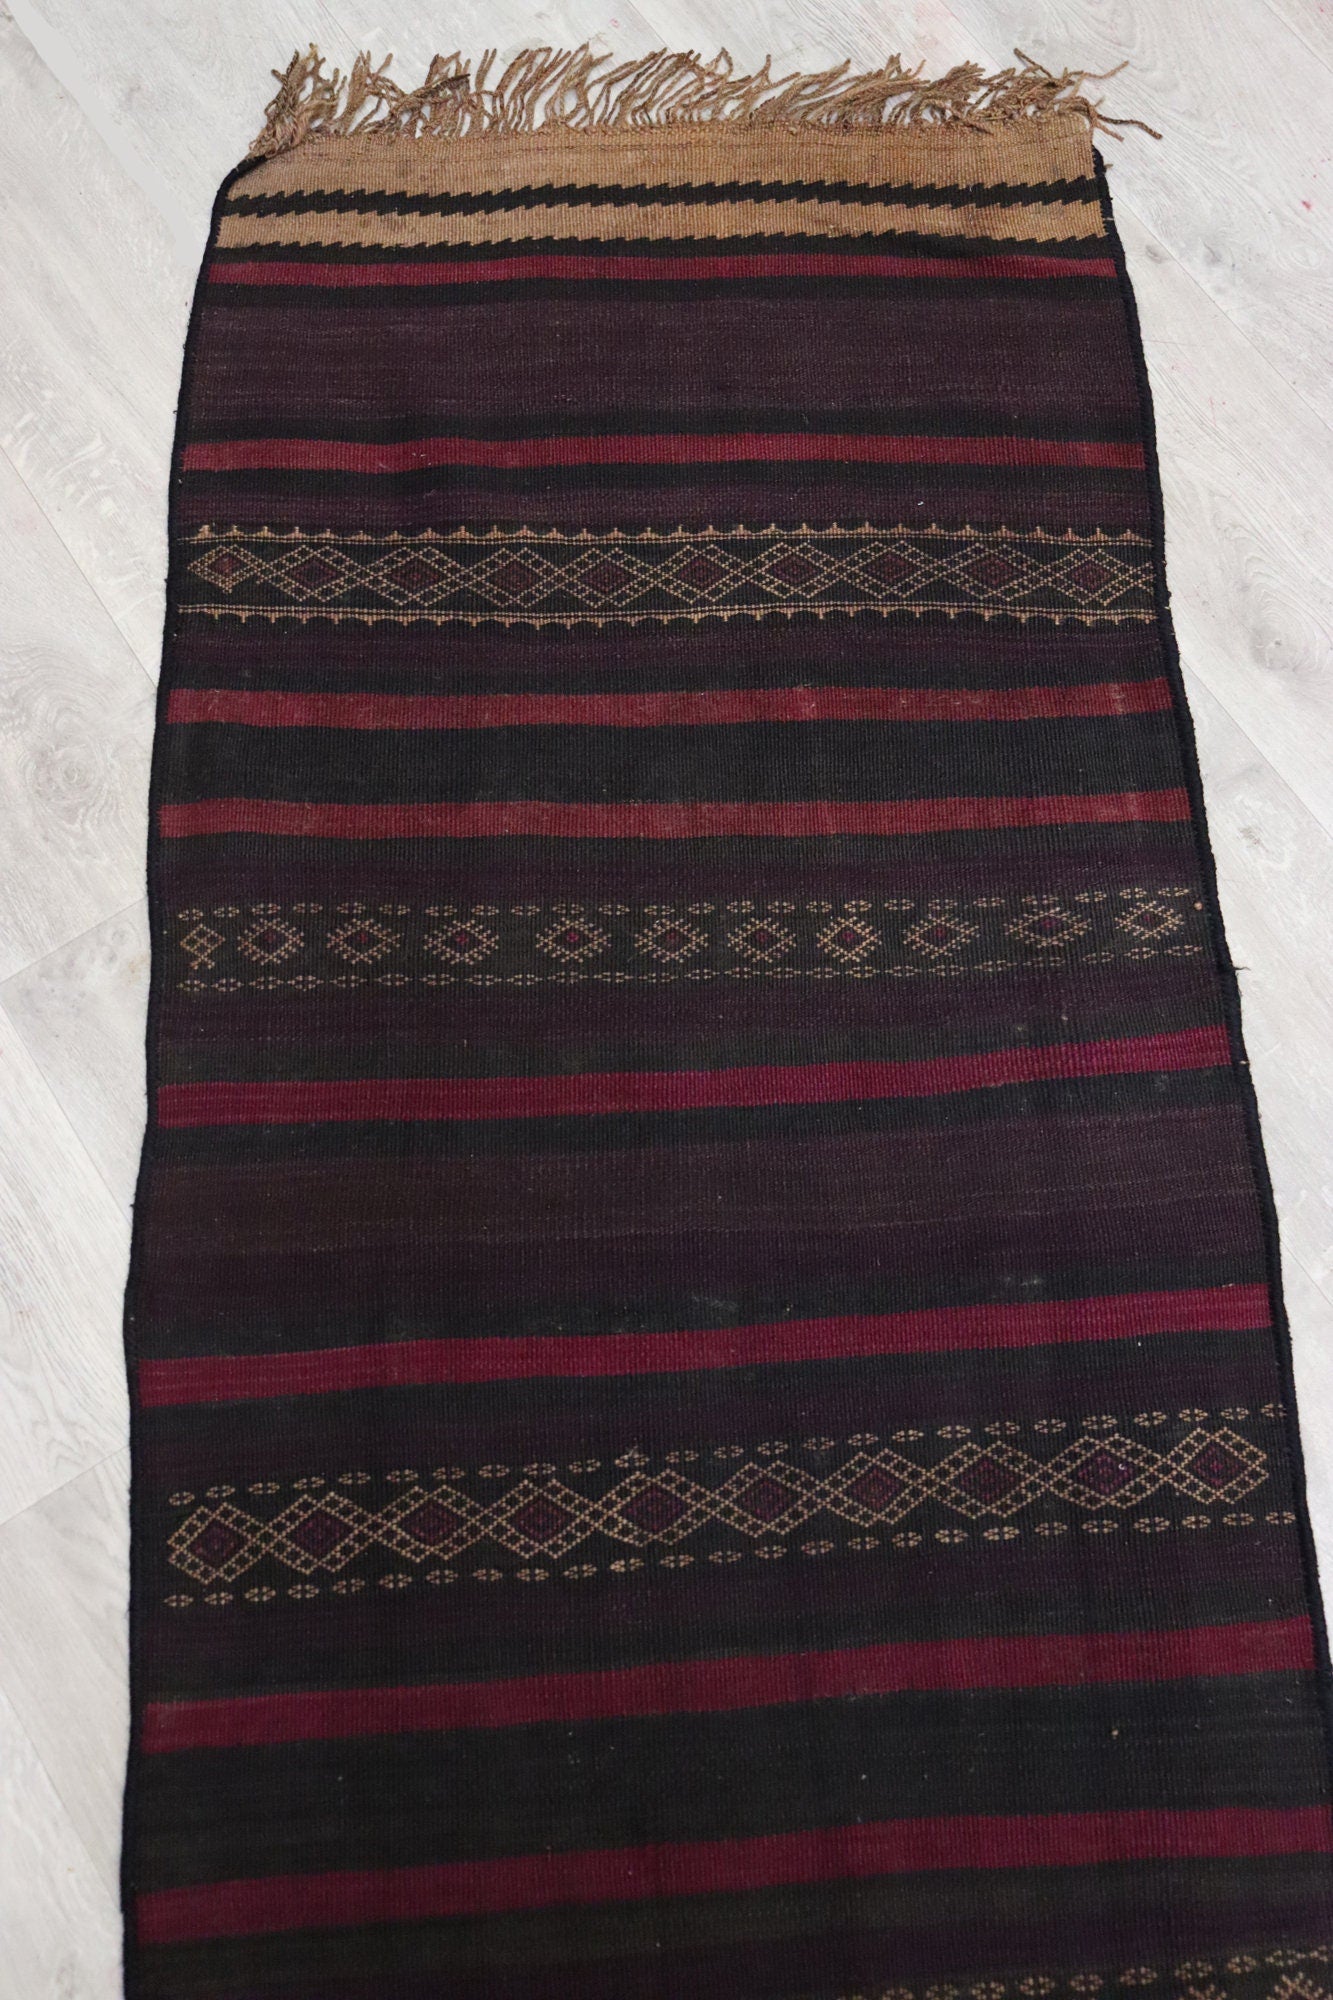 280x70 cm Antik orient handgewebte Teppich Nomaden Balouch sumakh kelim afghan Beloch Flur Läufer kilim Nr-410  Orientsbazar   